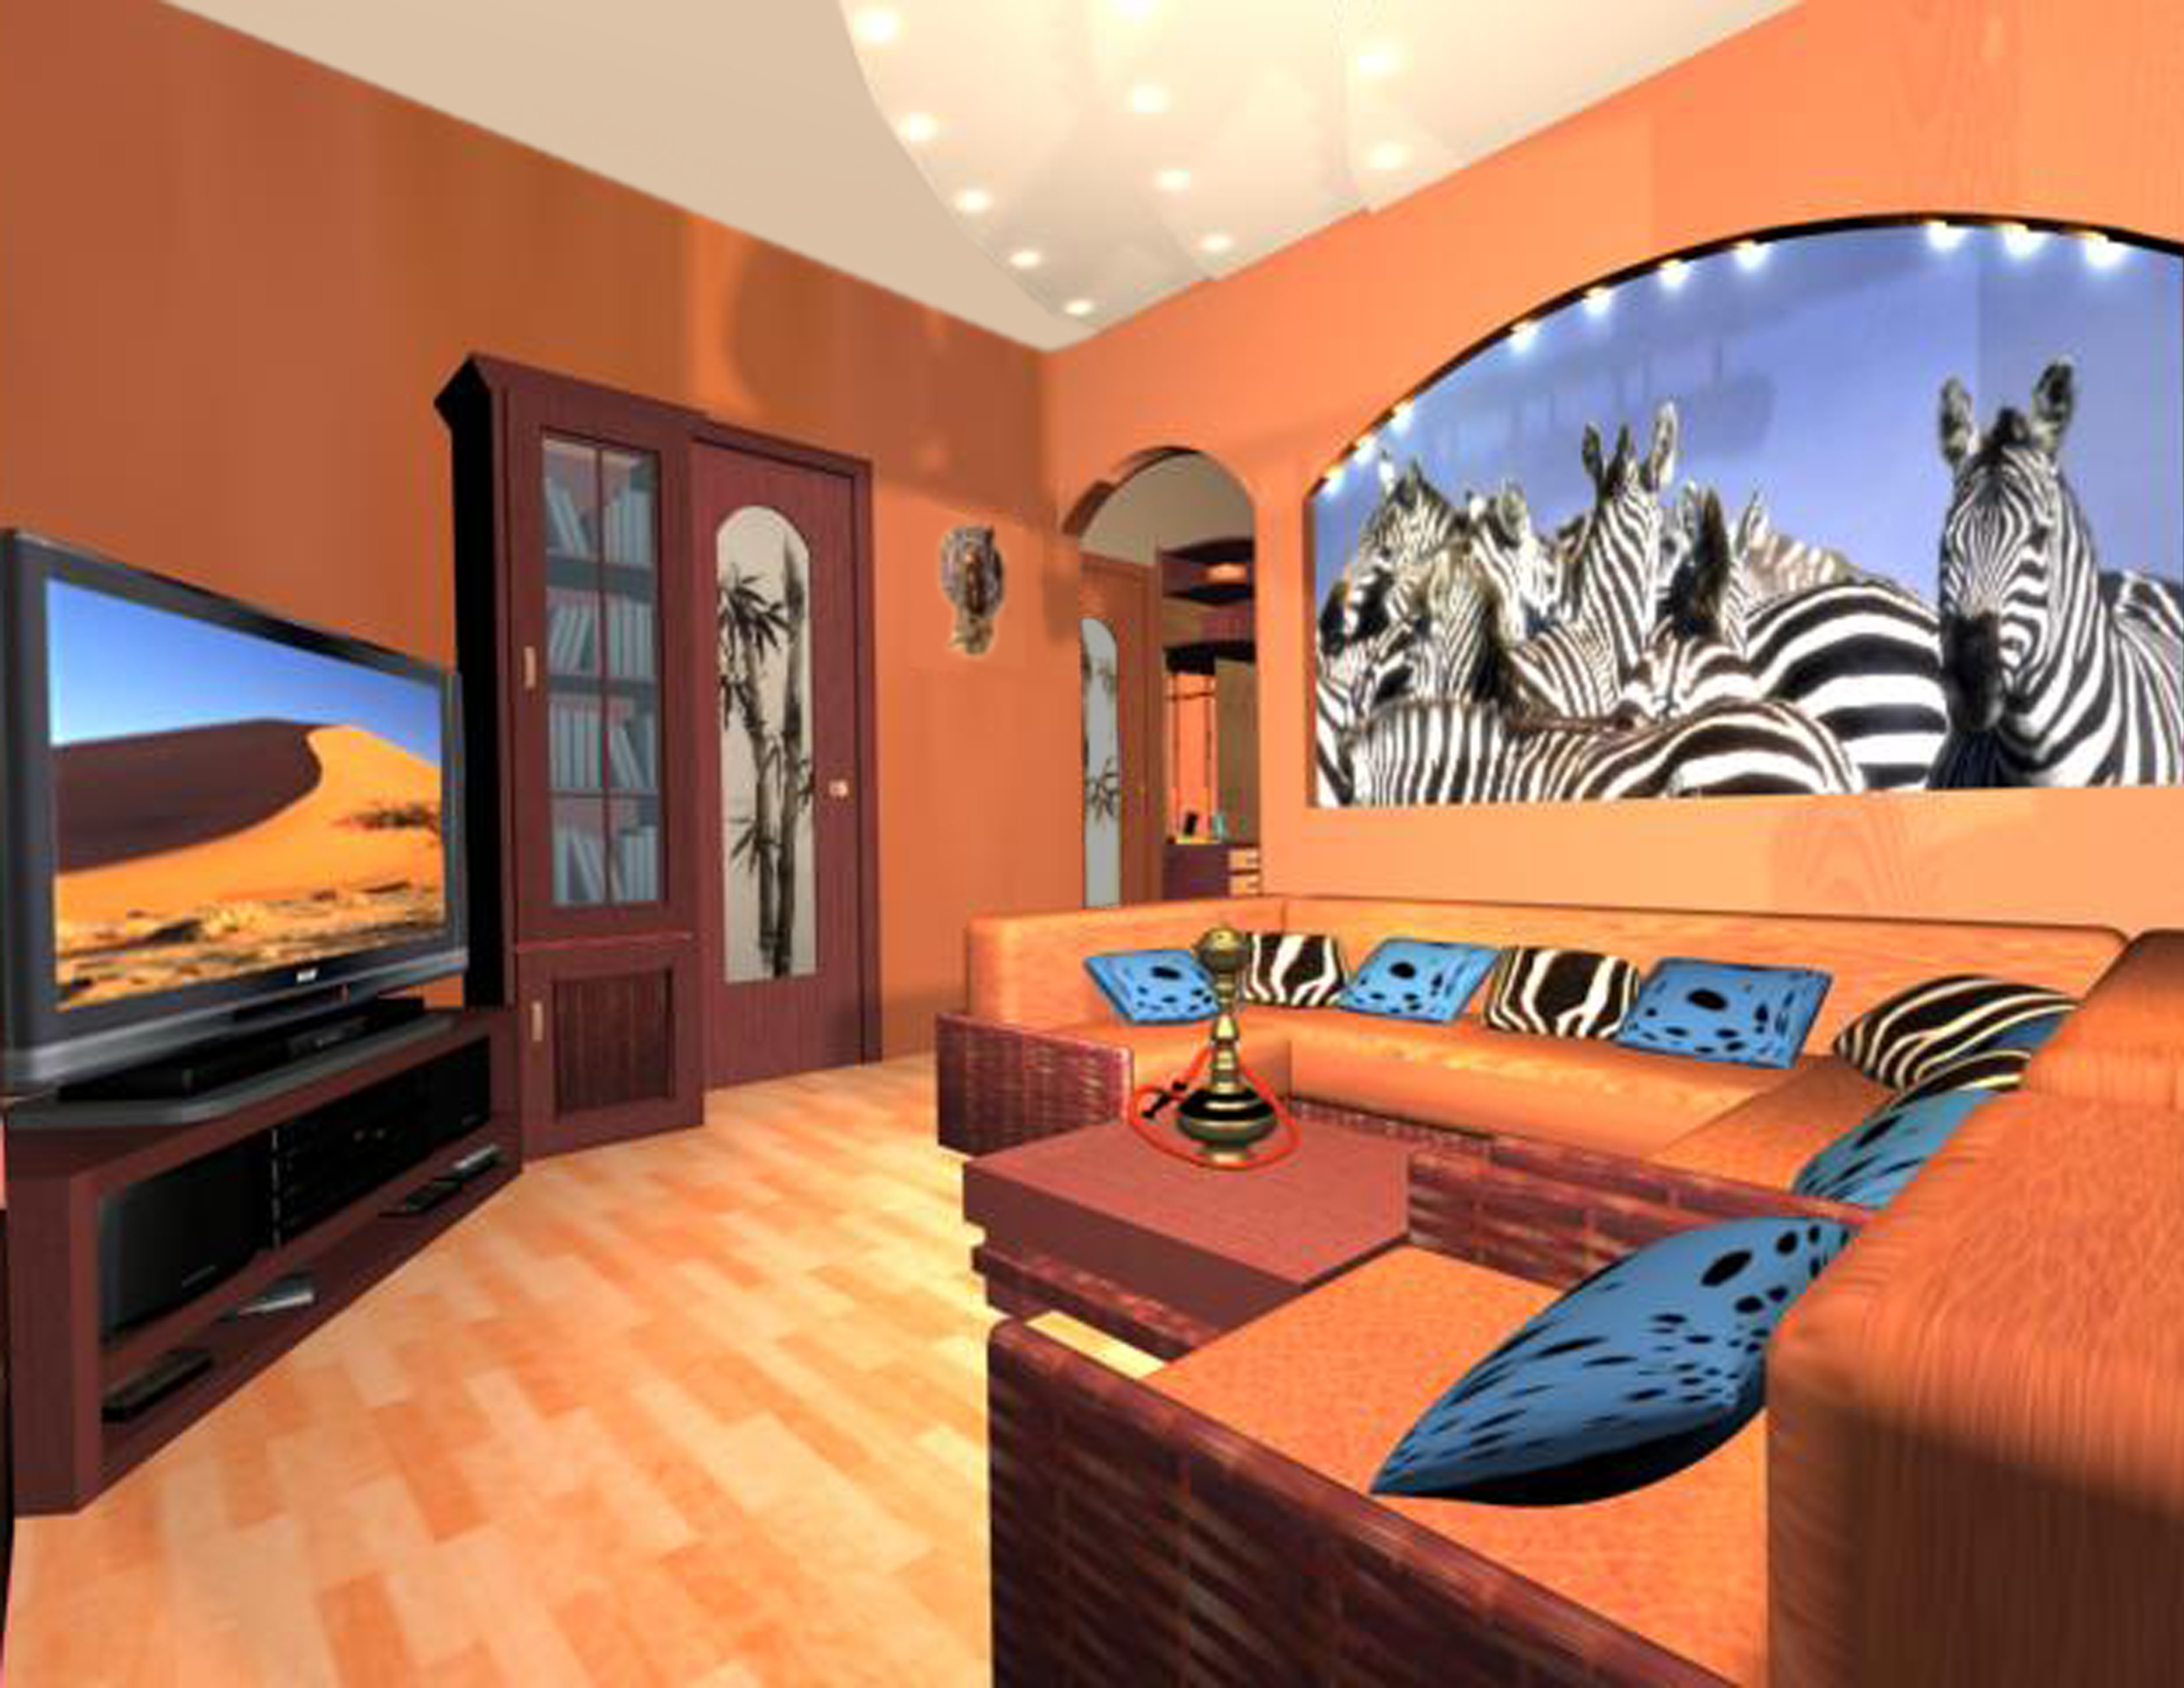 interni luminosi in appartamento in stile africano